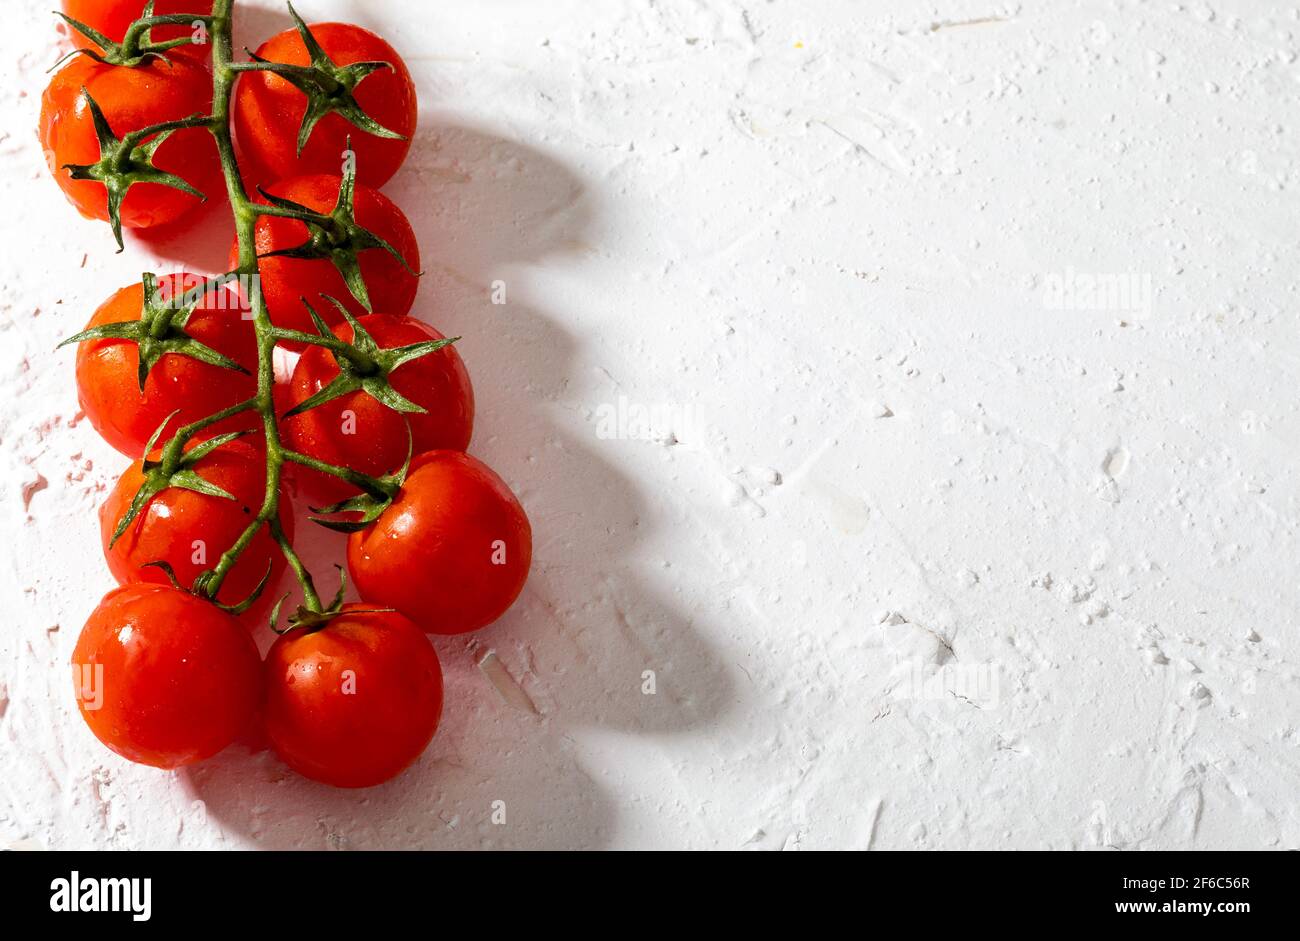 Bei pomodori freschi di vite (ciliegia) con gocce d'acqua, crudi, interi e dimezzati. Su sfondo bianco con texture. Ingredienti della dieta mediterranea Foto Stock